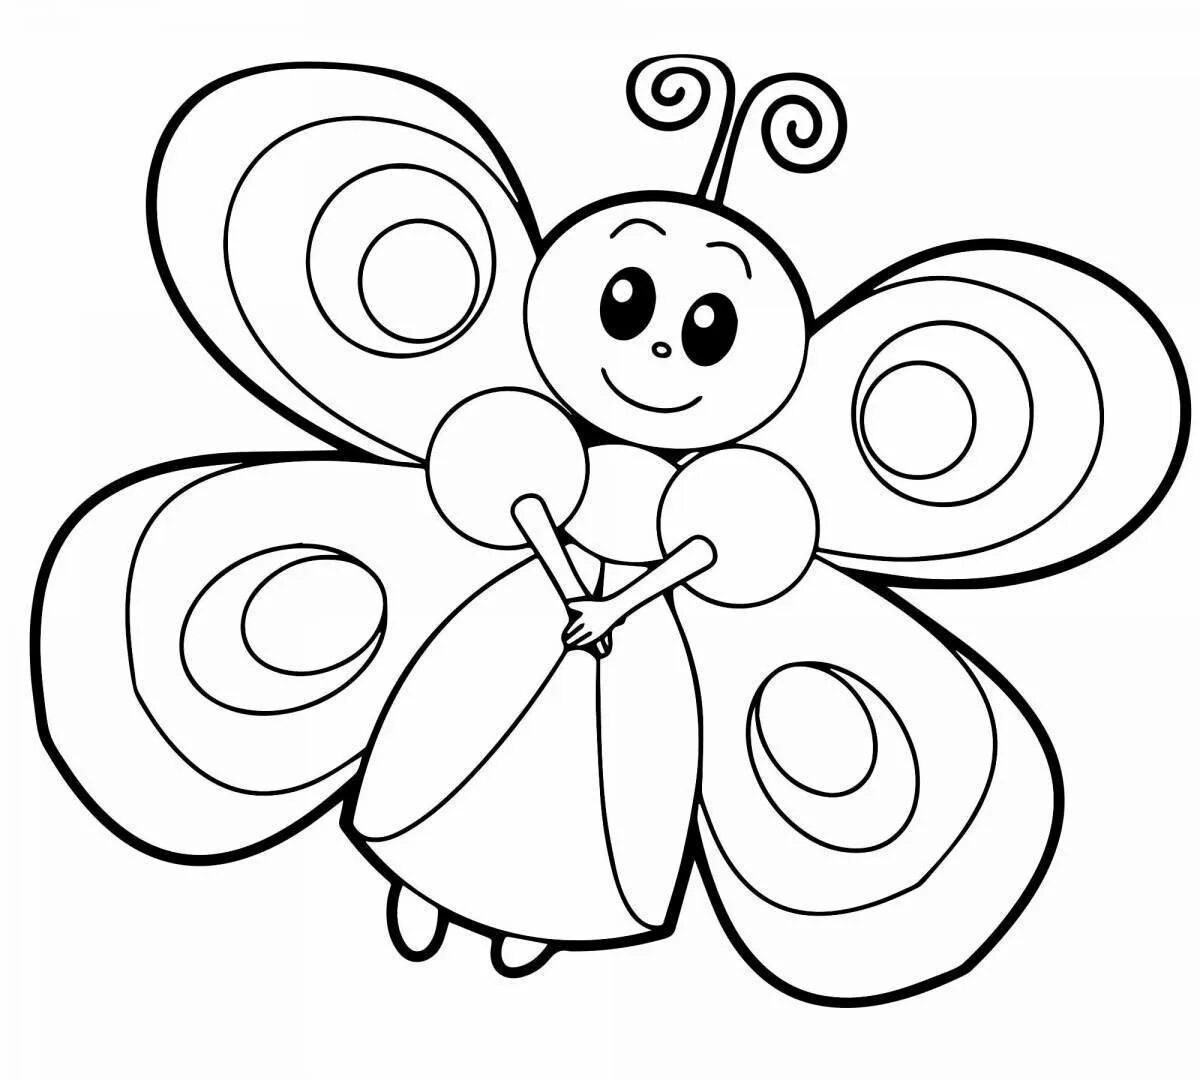 Бабочка раскраска для детей. Бабочка раскраска для малышей. Раскраска для девочек бабочки. Детские раскраски бабочки. Бабочки раскраски для детей 5 6 лет